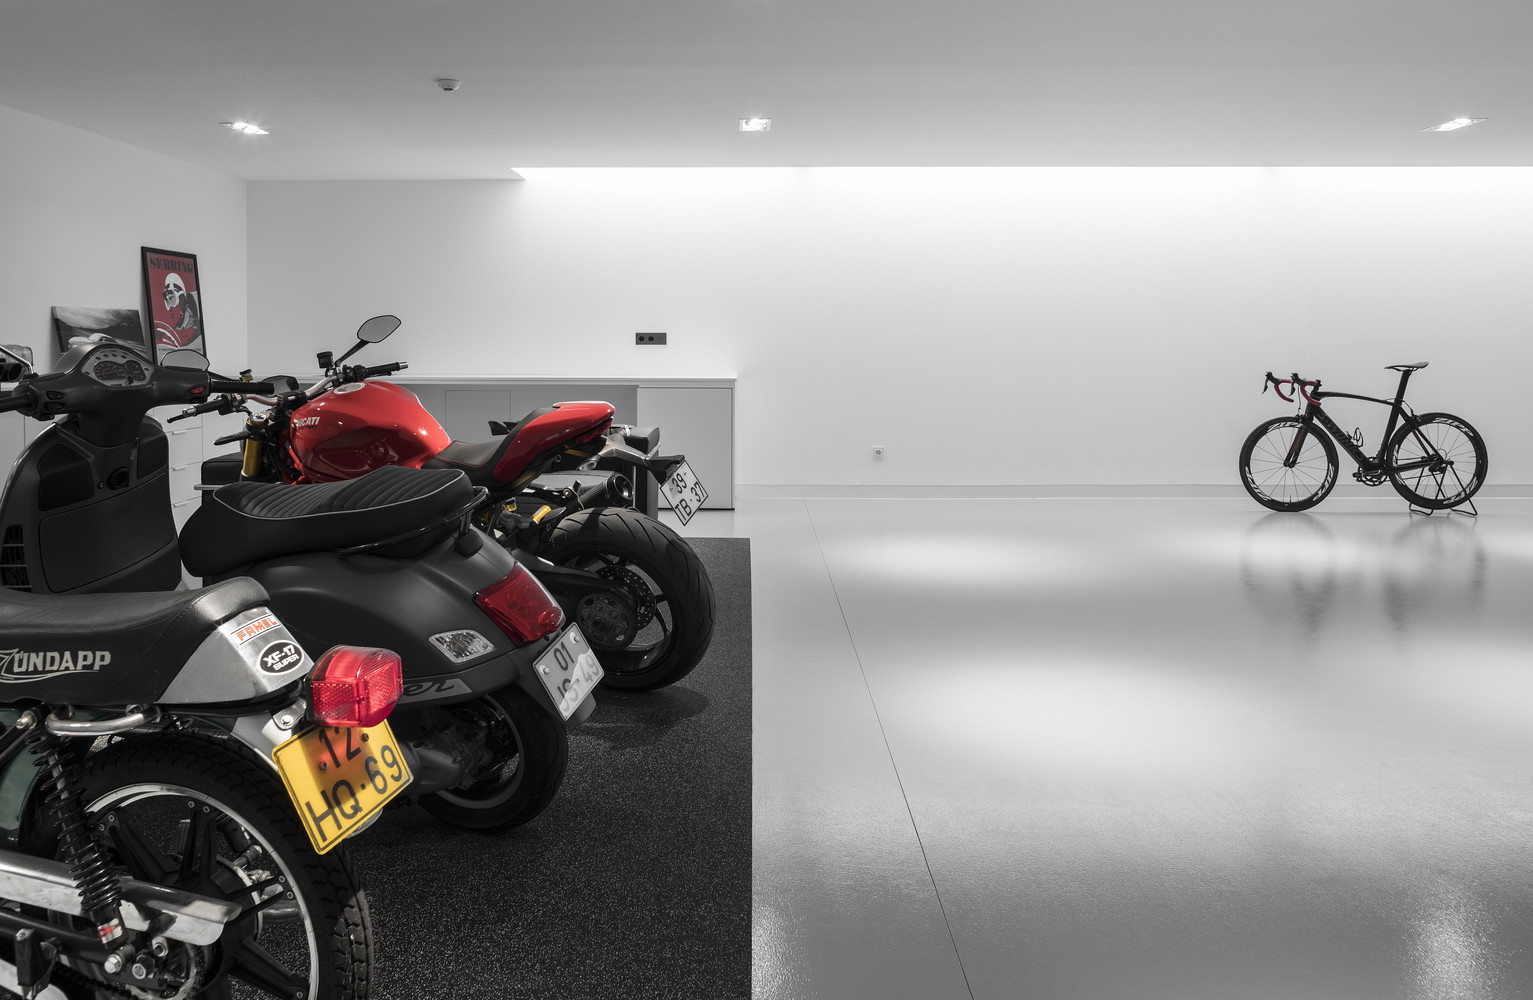 Arquitecto português cria garagem que parece uma galeria